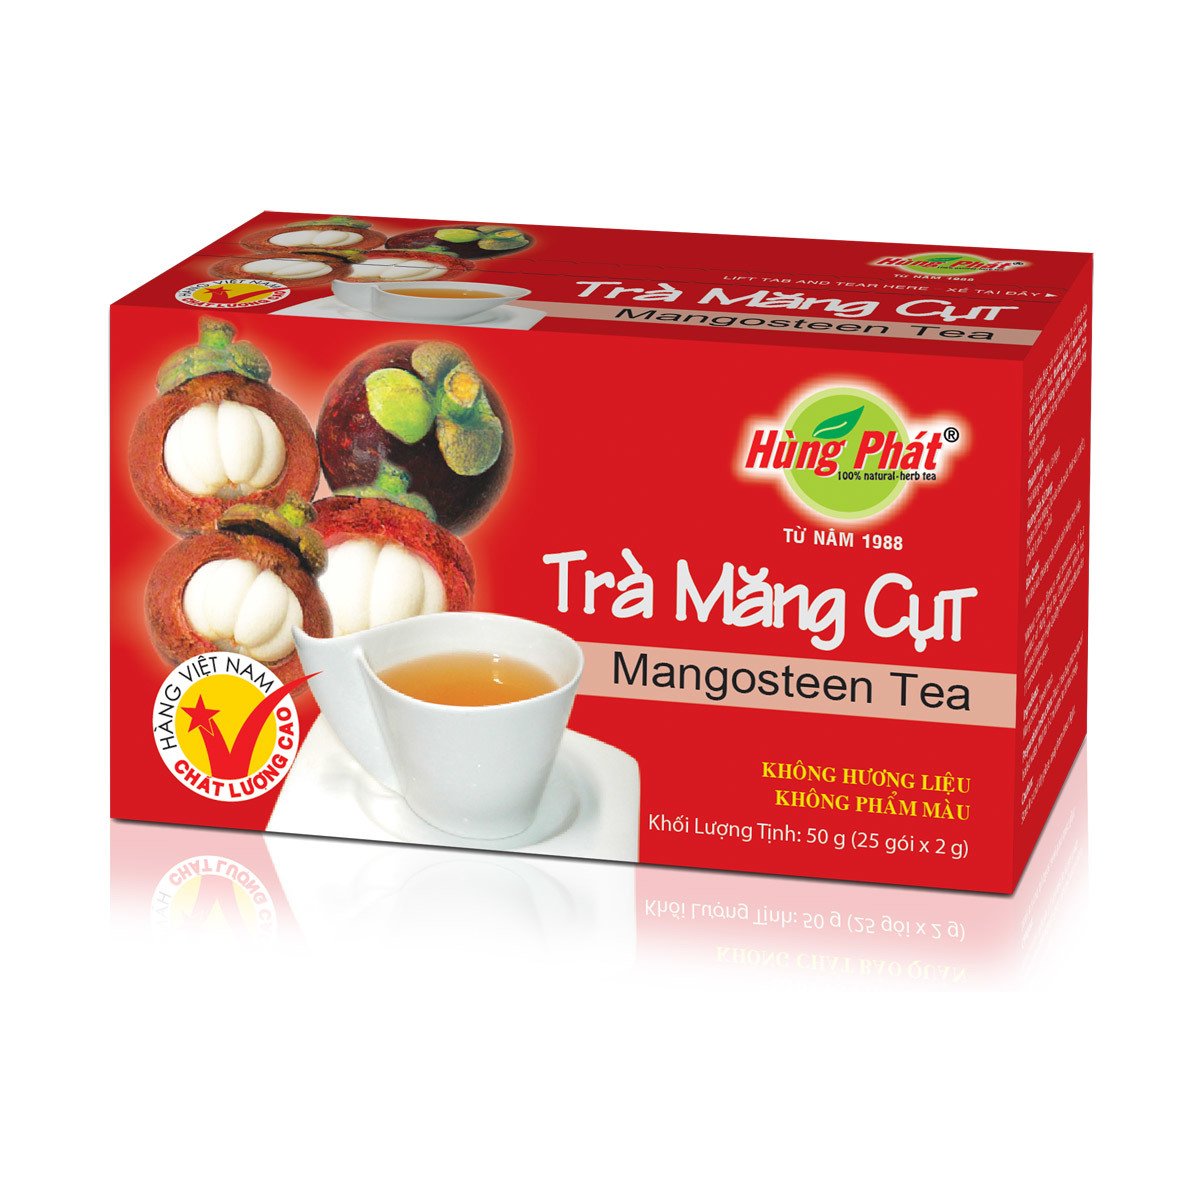 Mangosteen Tea,Vietnam Hung Phat Tea price supplier - 21food